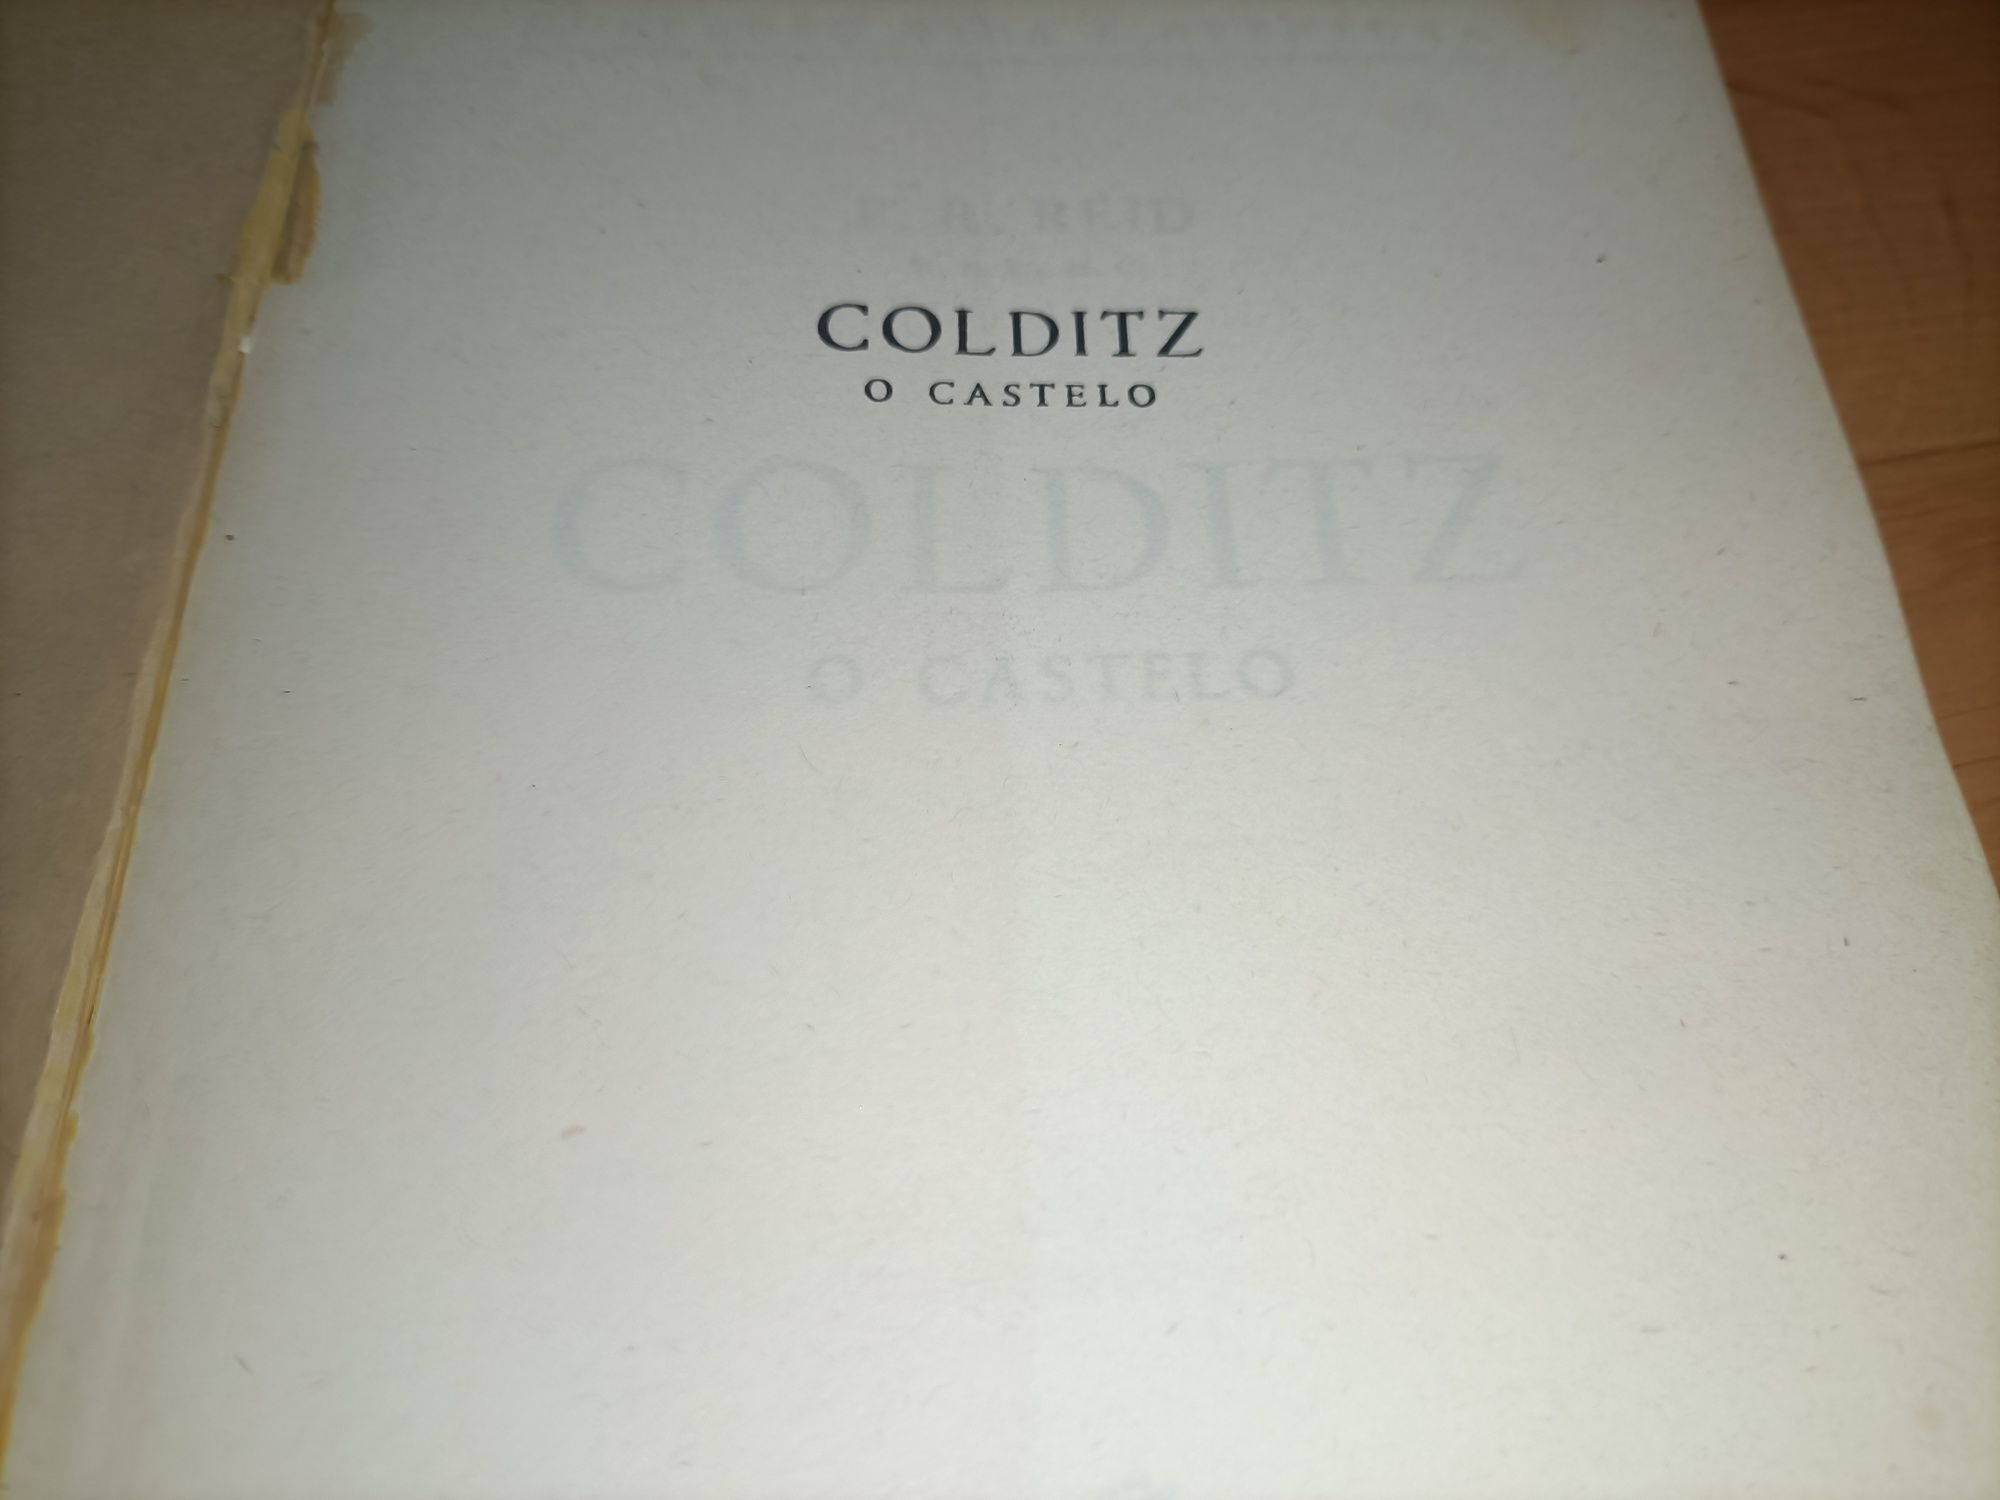 Colditz o castelo